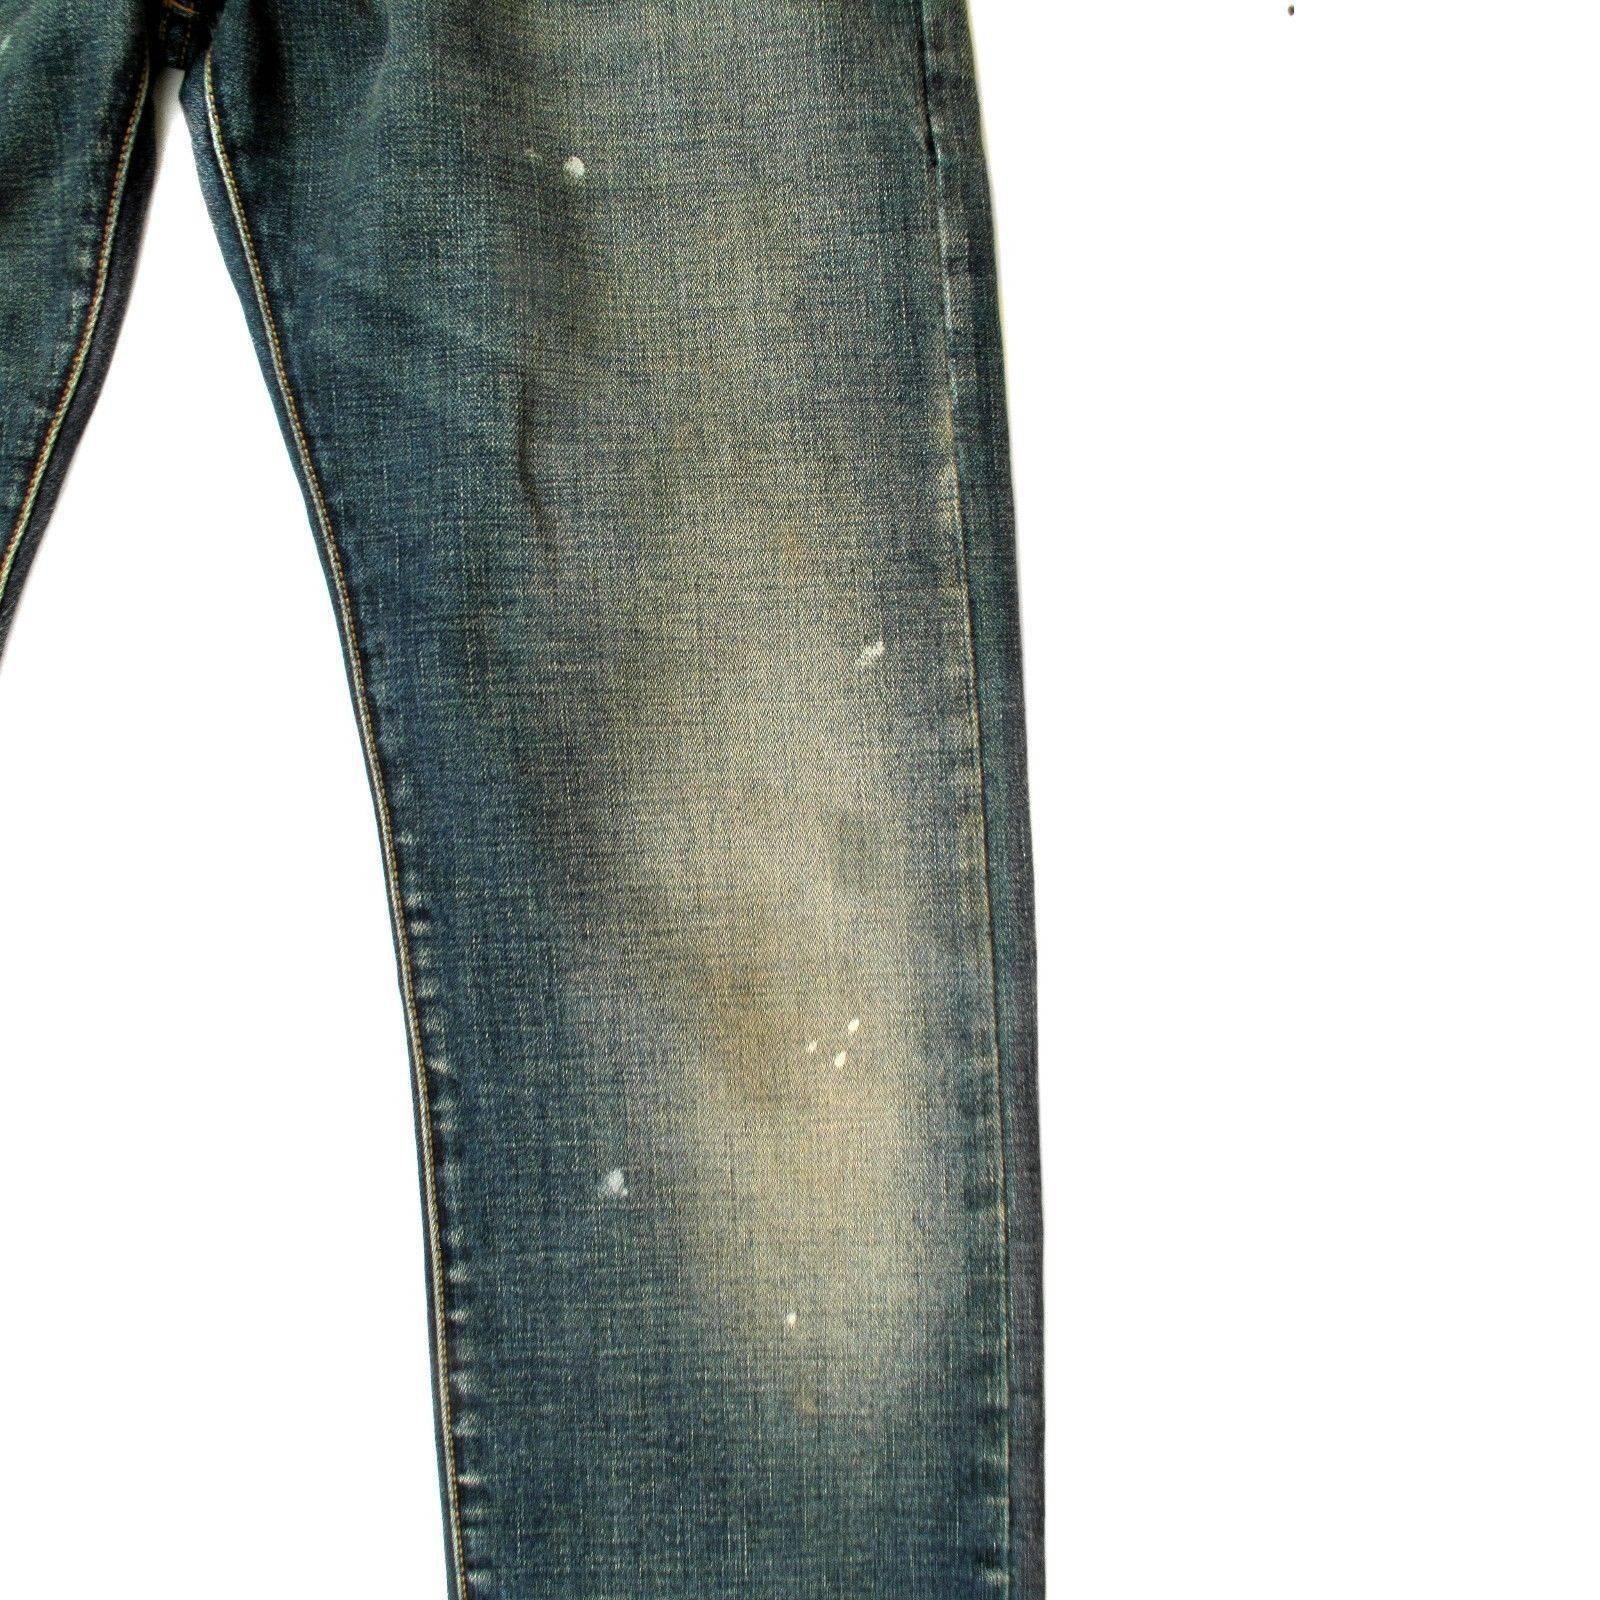 saint laurent ripped jeans